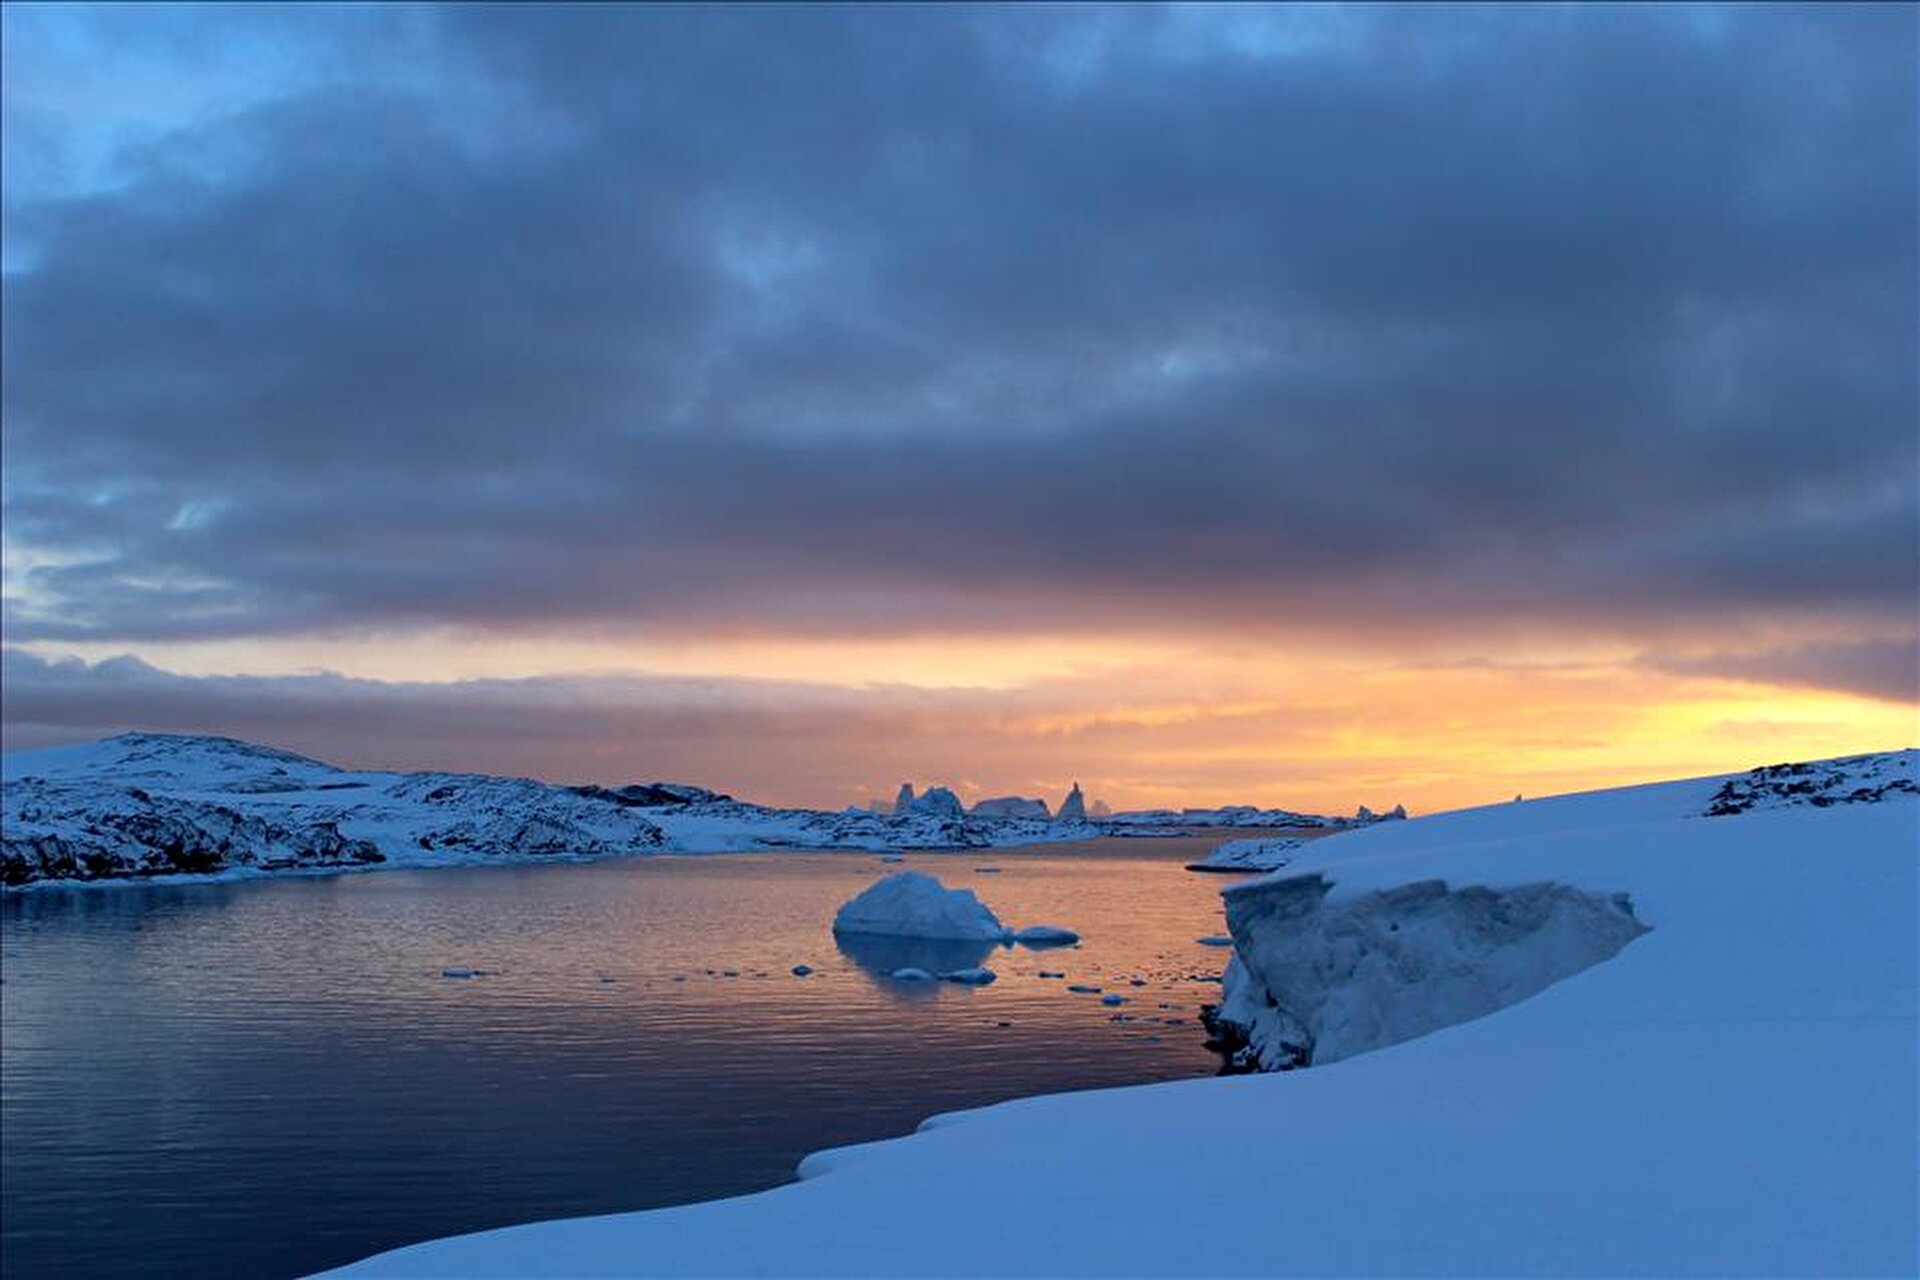 Turkey to establish Antarctic research base next year